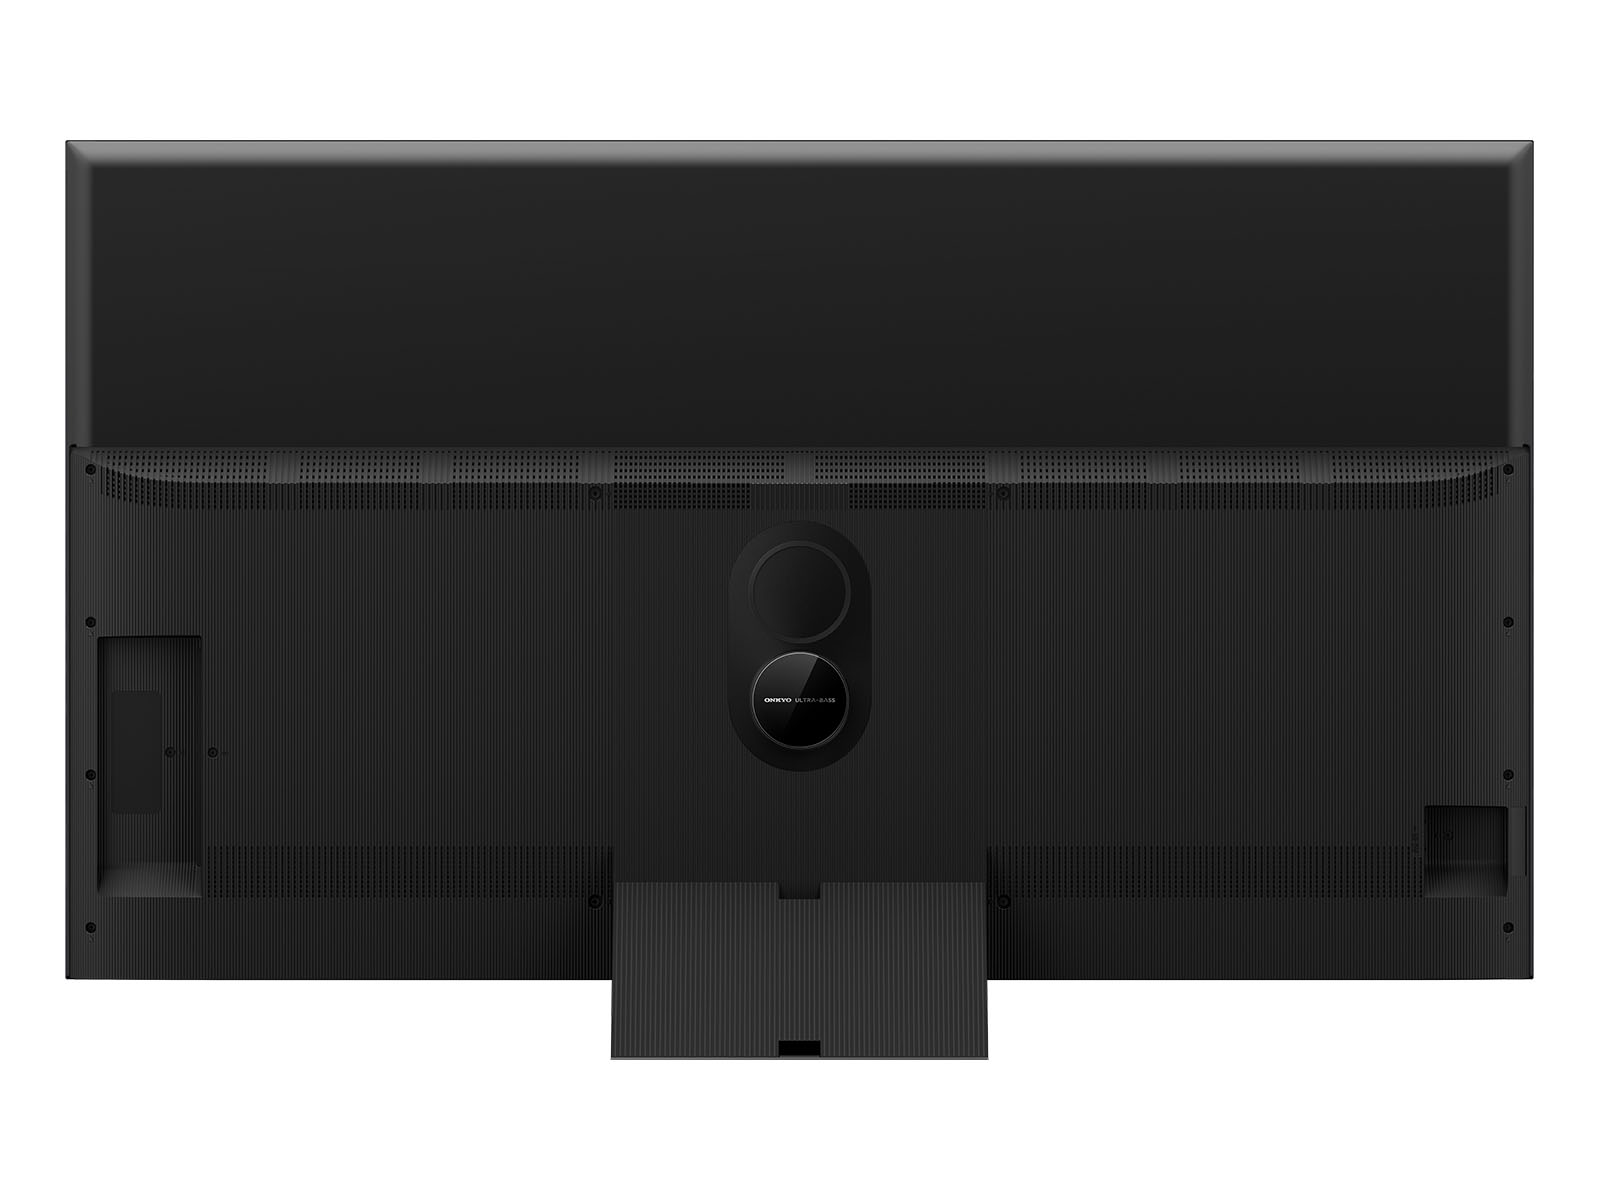 55″ C845 Mini LED 4K Google TV - Model 55C845